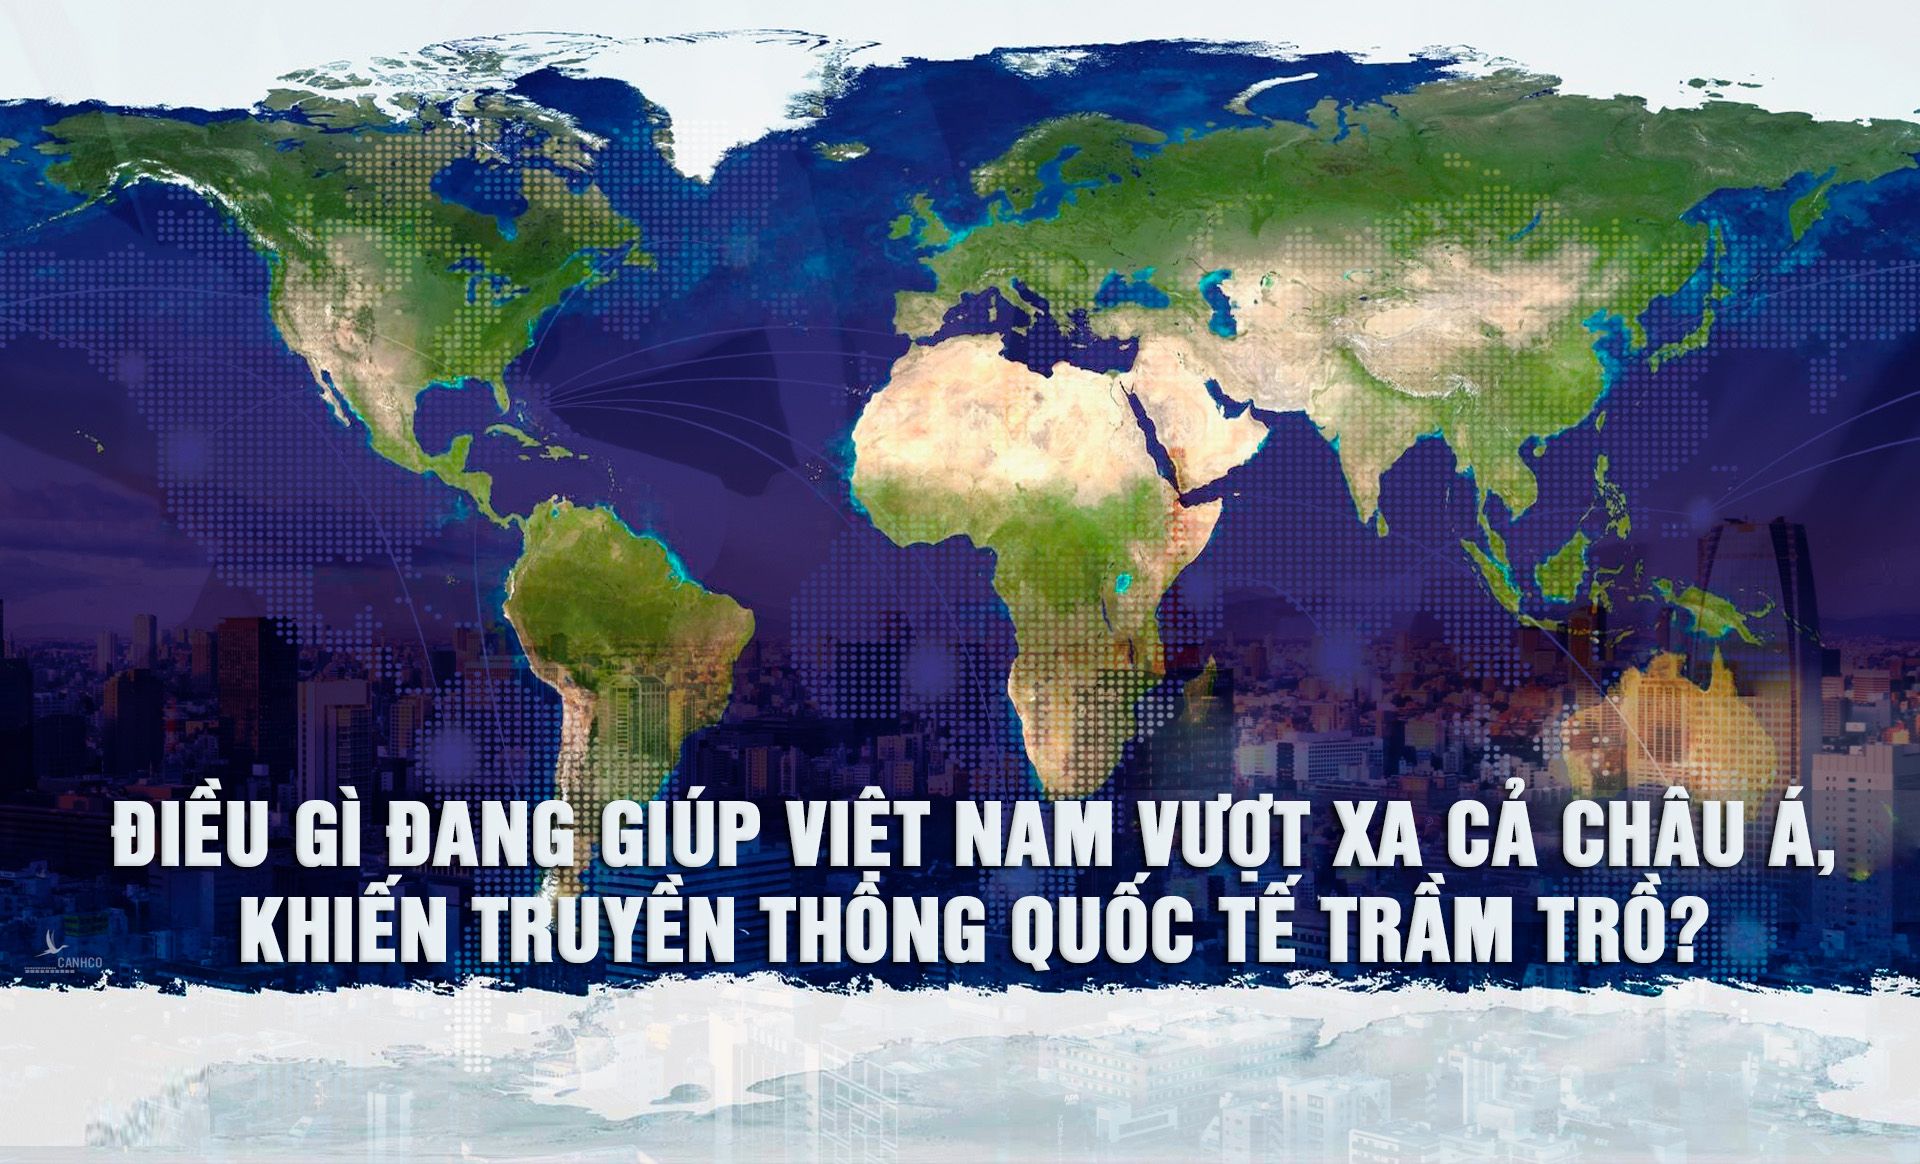 Điều gì đang giúp Việt Nam vượt xa cả Châu Á, khiến truyền thông quốc tế trầm trồ?